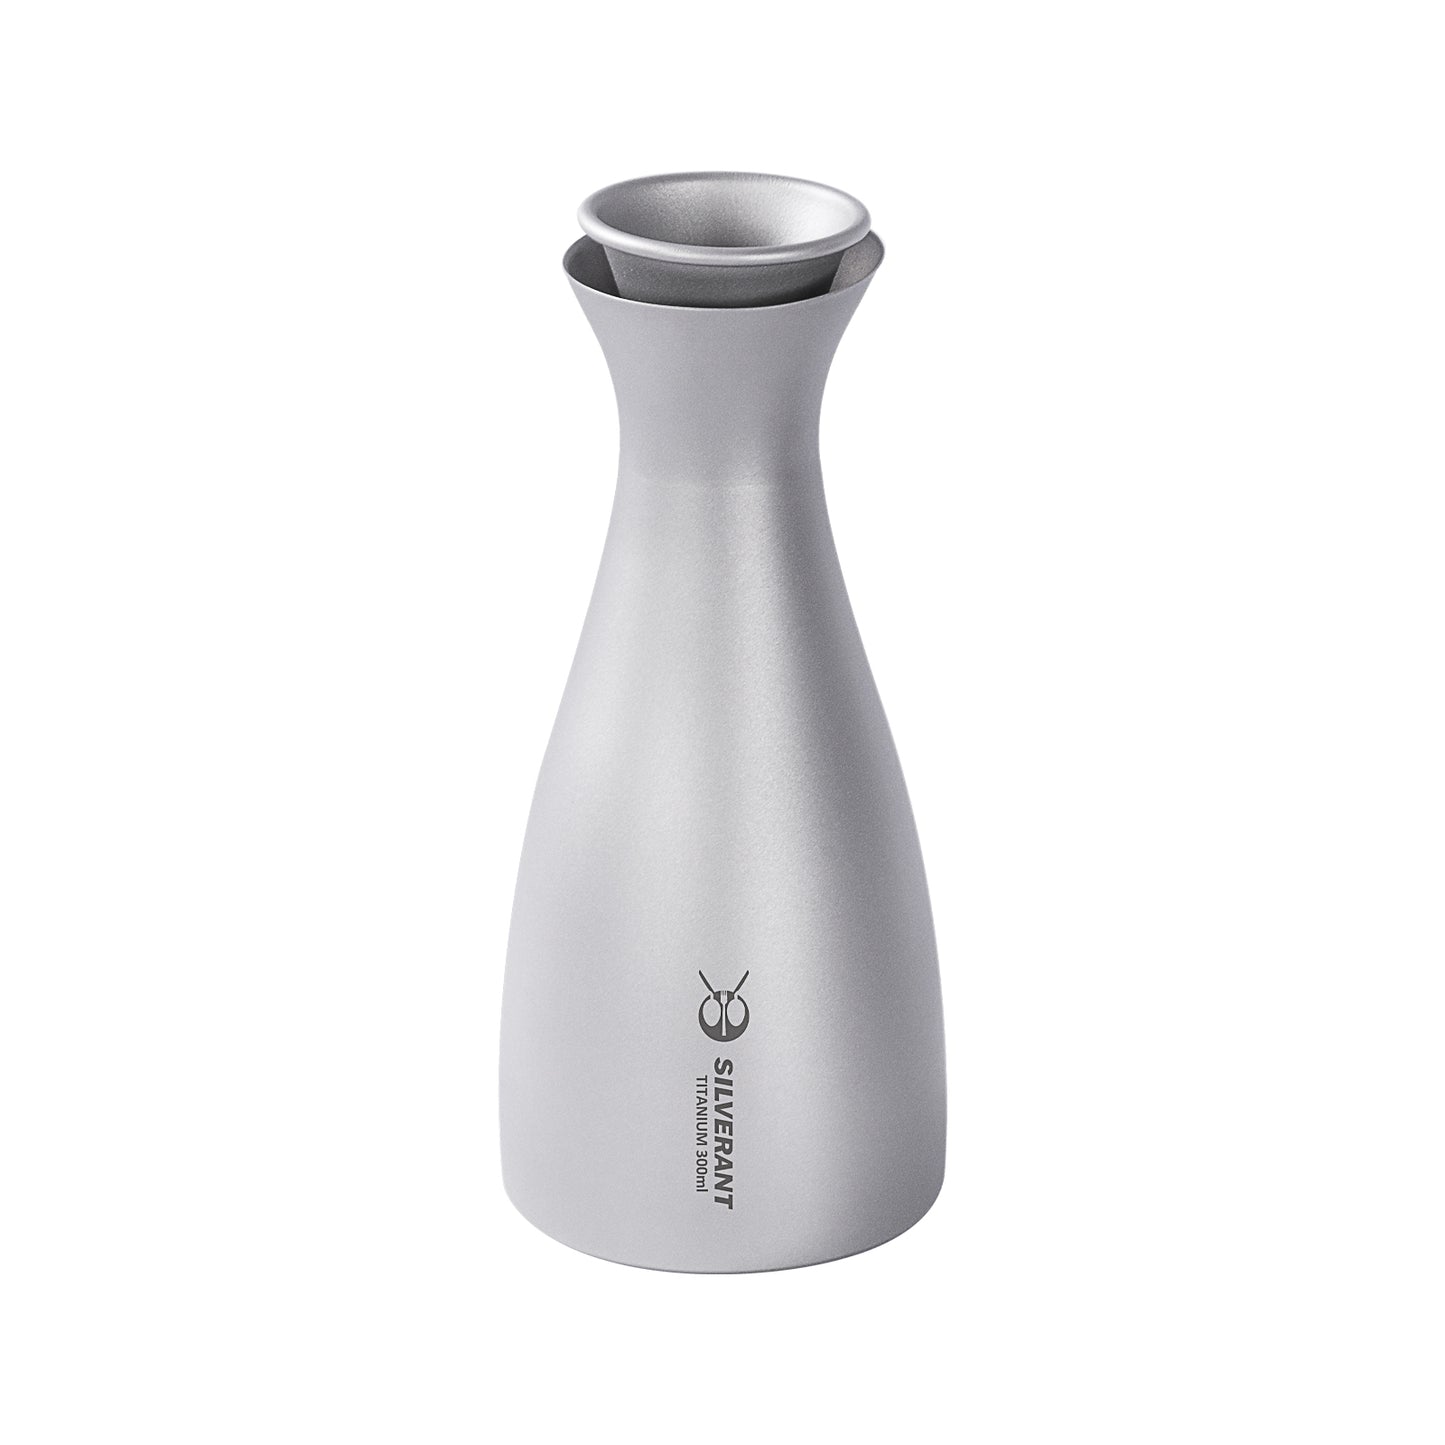 
                  
                    Titanium Sake Bottle - 330ml/10.5 fl oz - SilverAnt Outdoors
                  
                